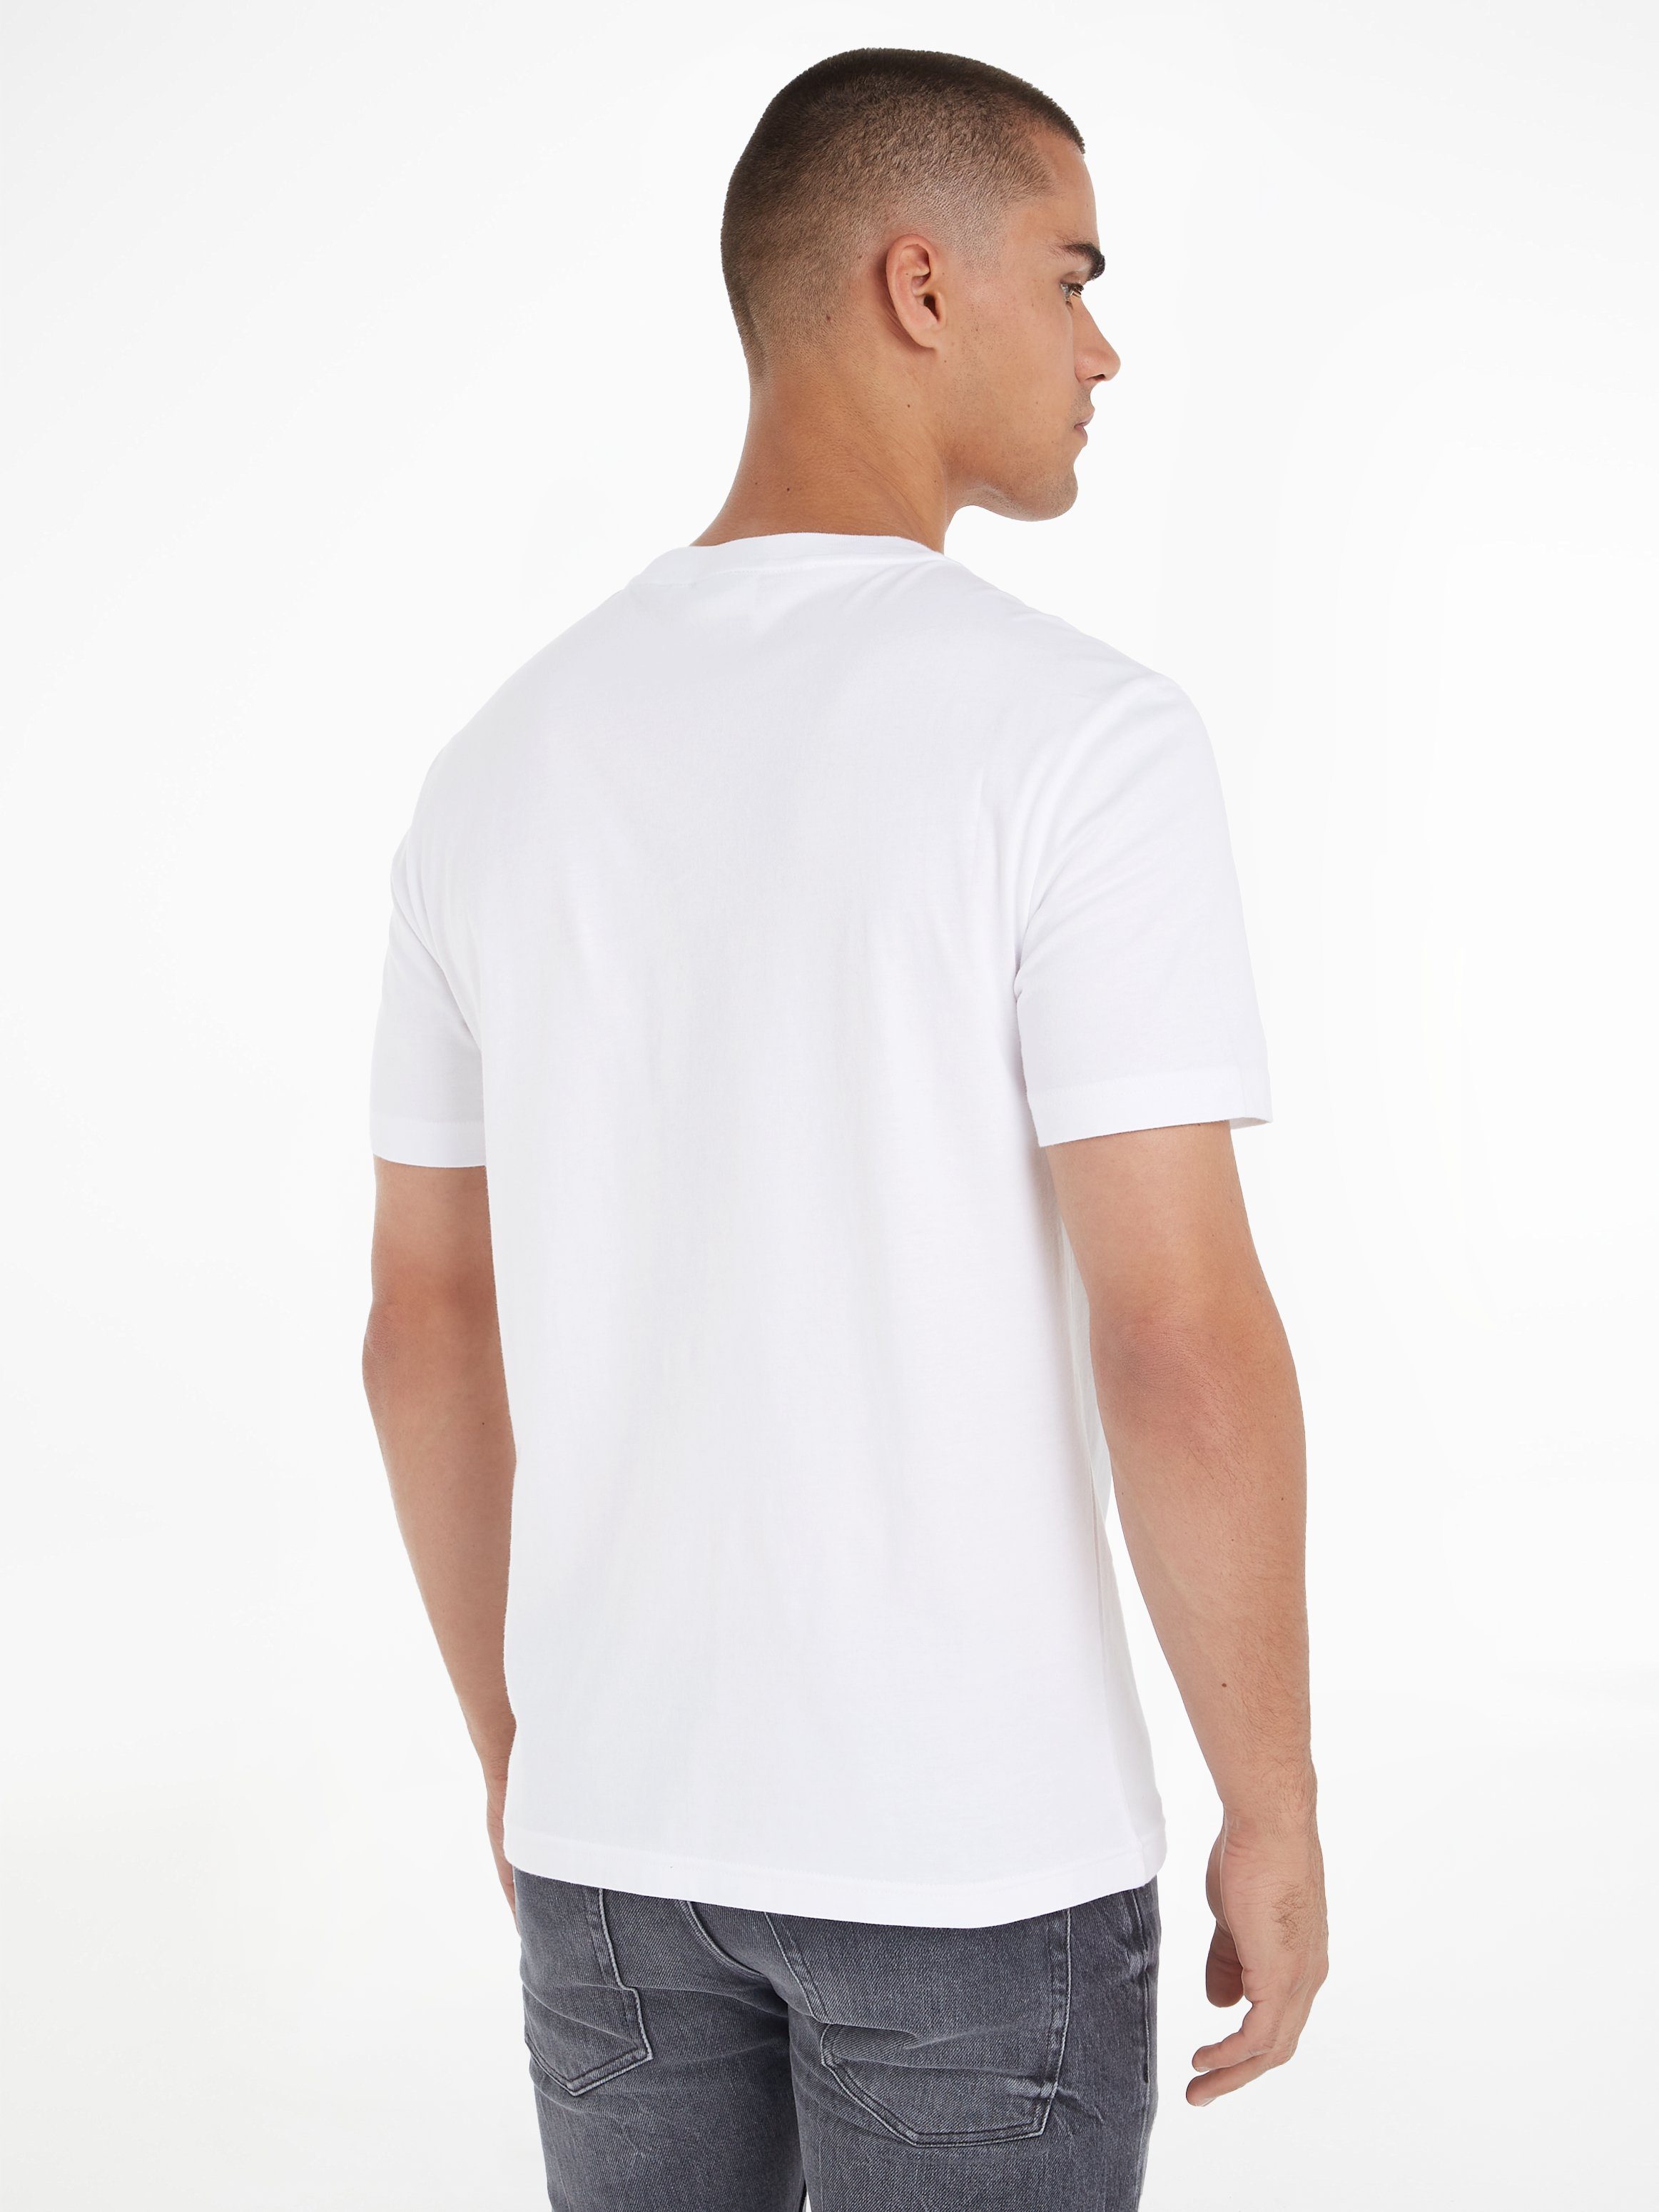 CUT Bright T-SHIRT LOGO T-Shirt Klein White THROUGH Calvin